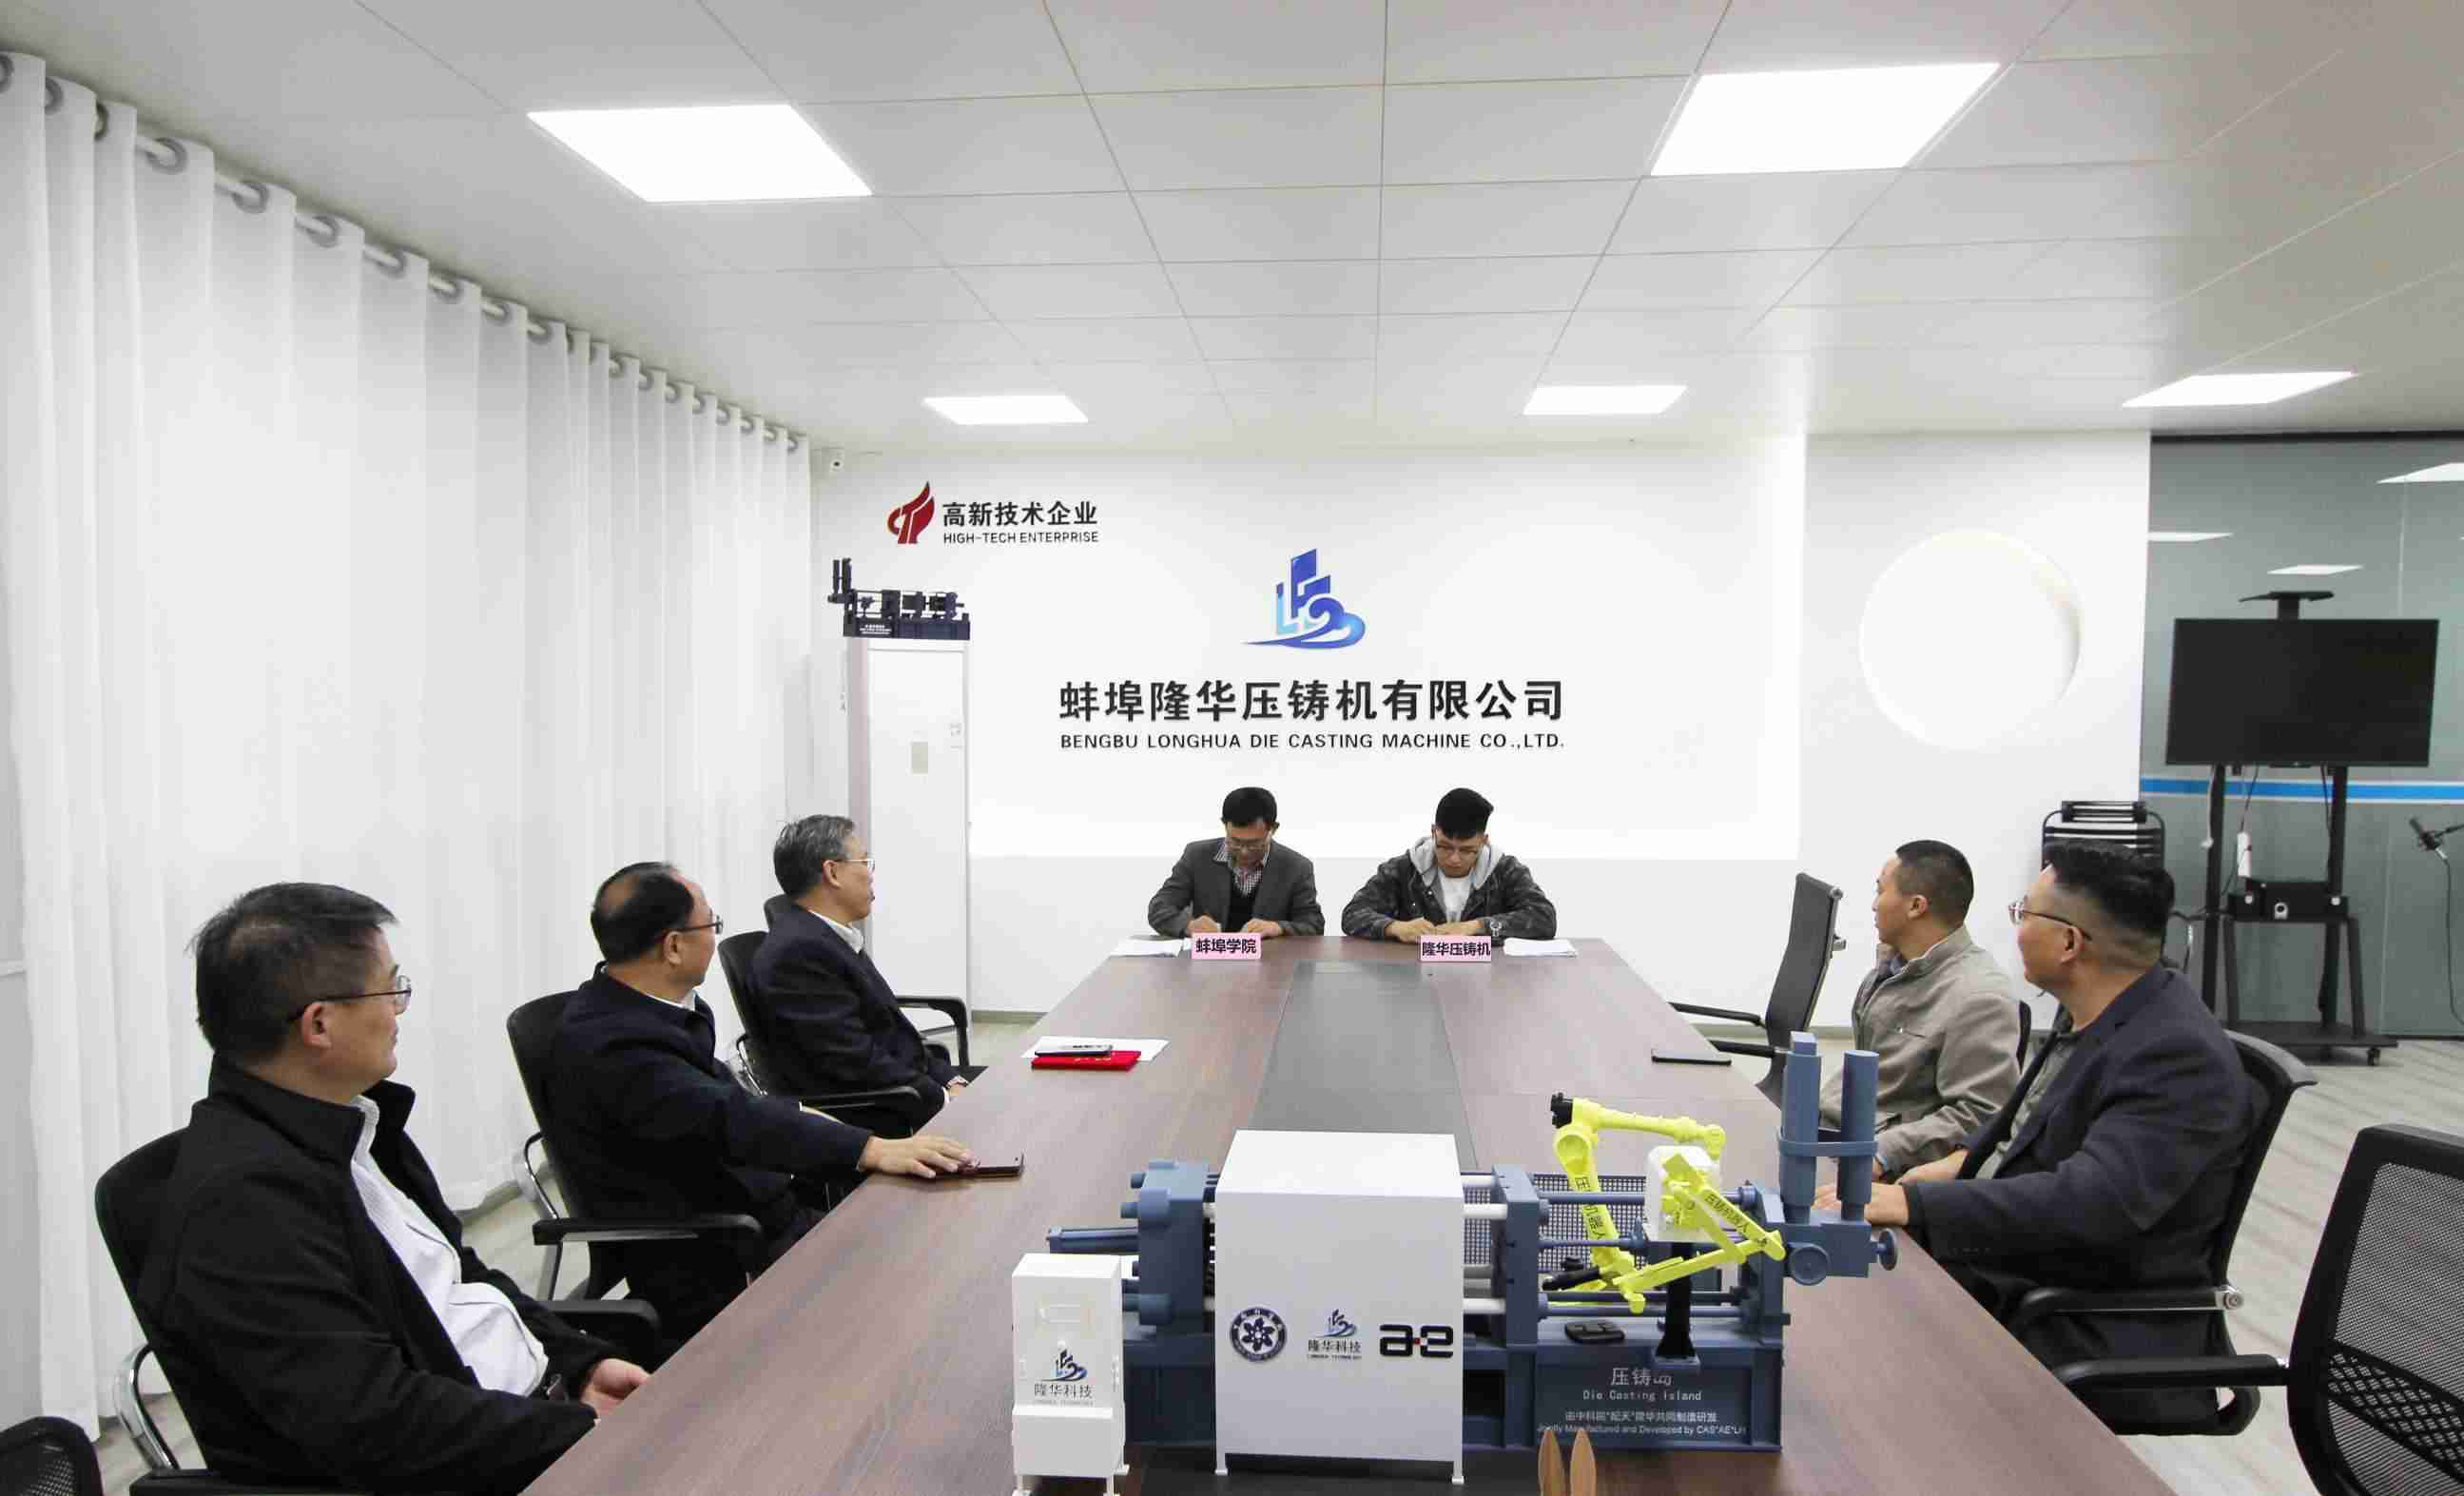 Bengbu Longhua и колледж Bengbu подписали соглашение о сотрудничестве в области исследований и разработок «Ali Cloud Control System для робота для литья под давлением»!